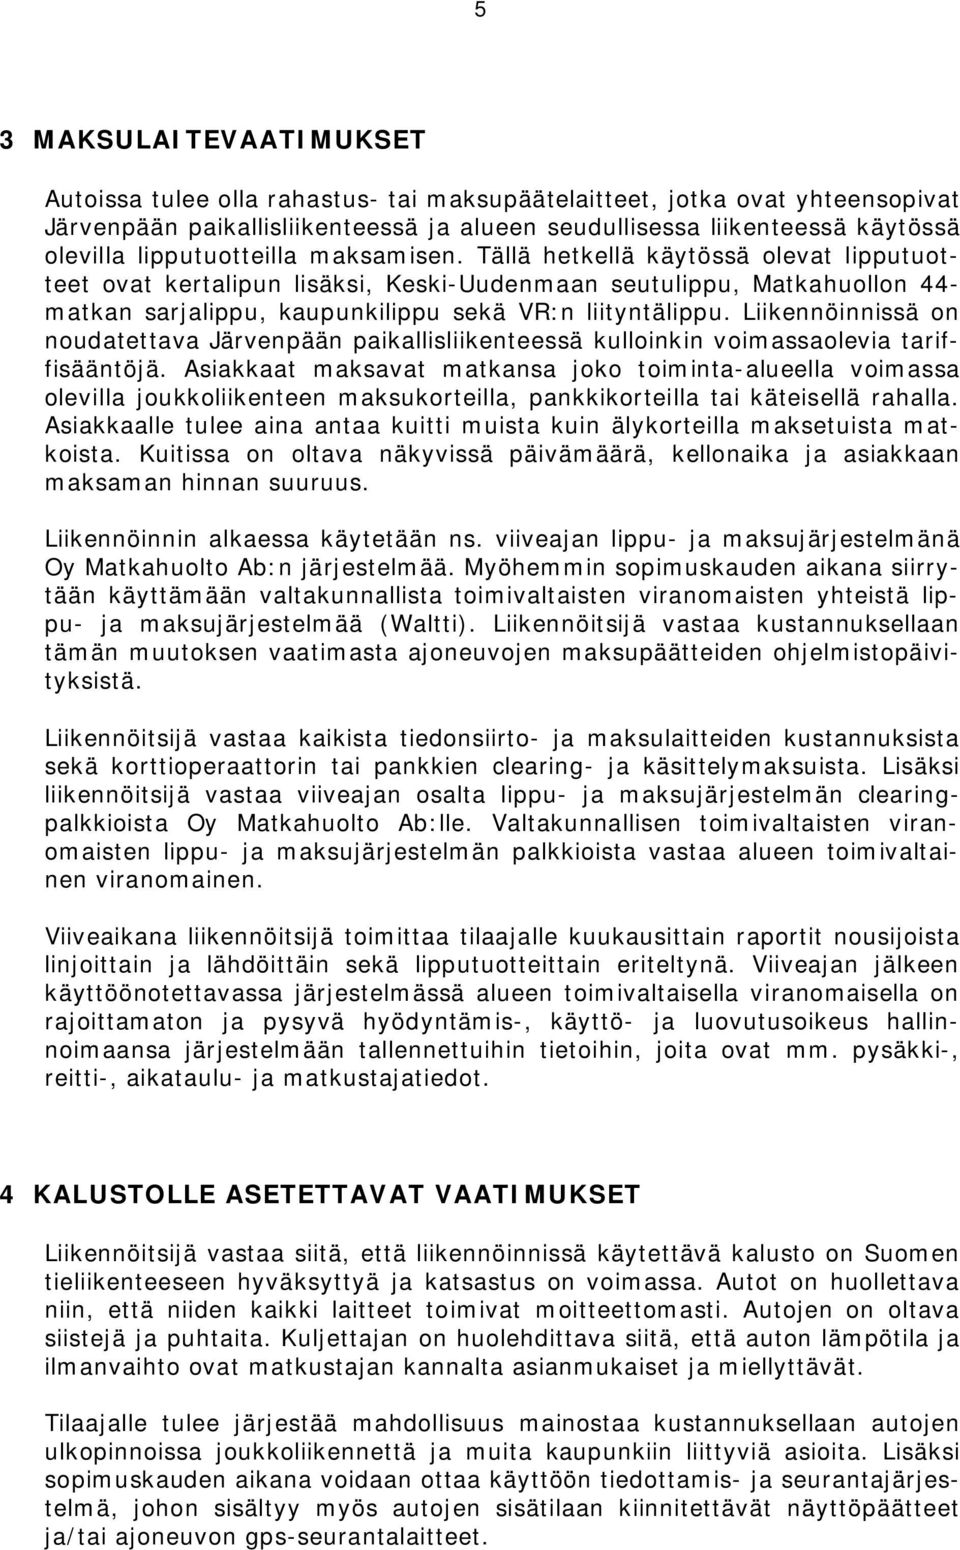 Liikennöinnissä on noudatettava Järvenpään paikallisliikenteessä kulloinkin voimassaolevia tariffisääntöjä.